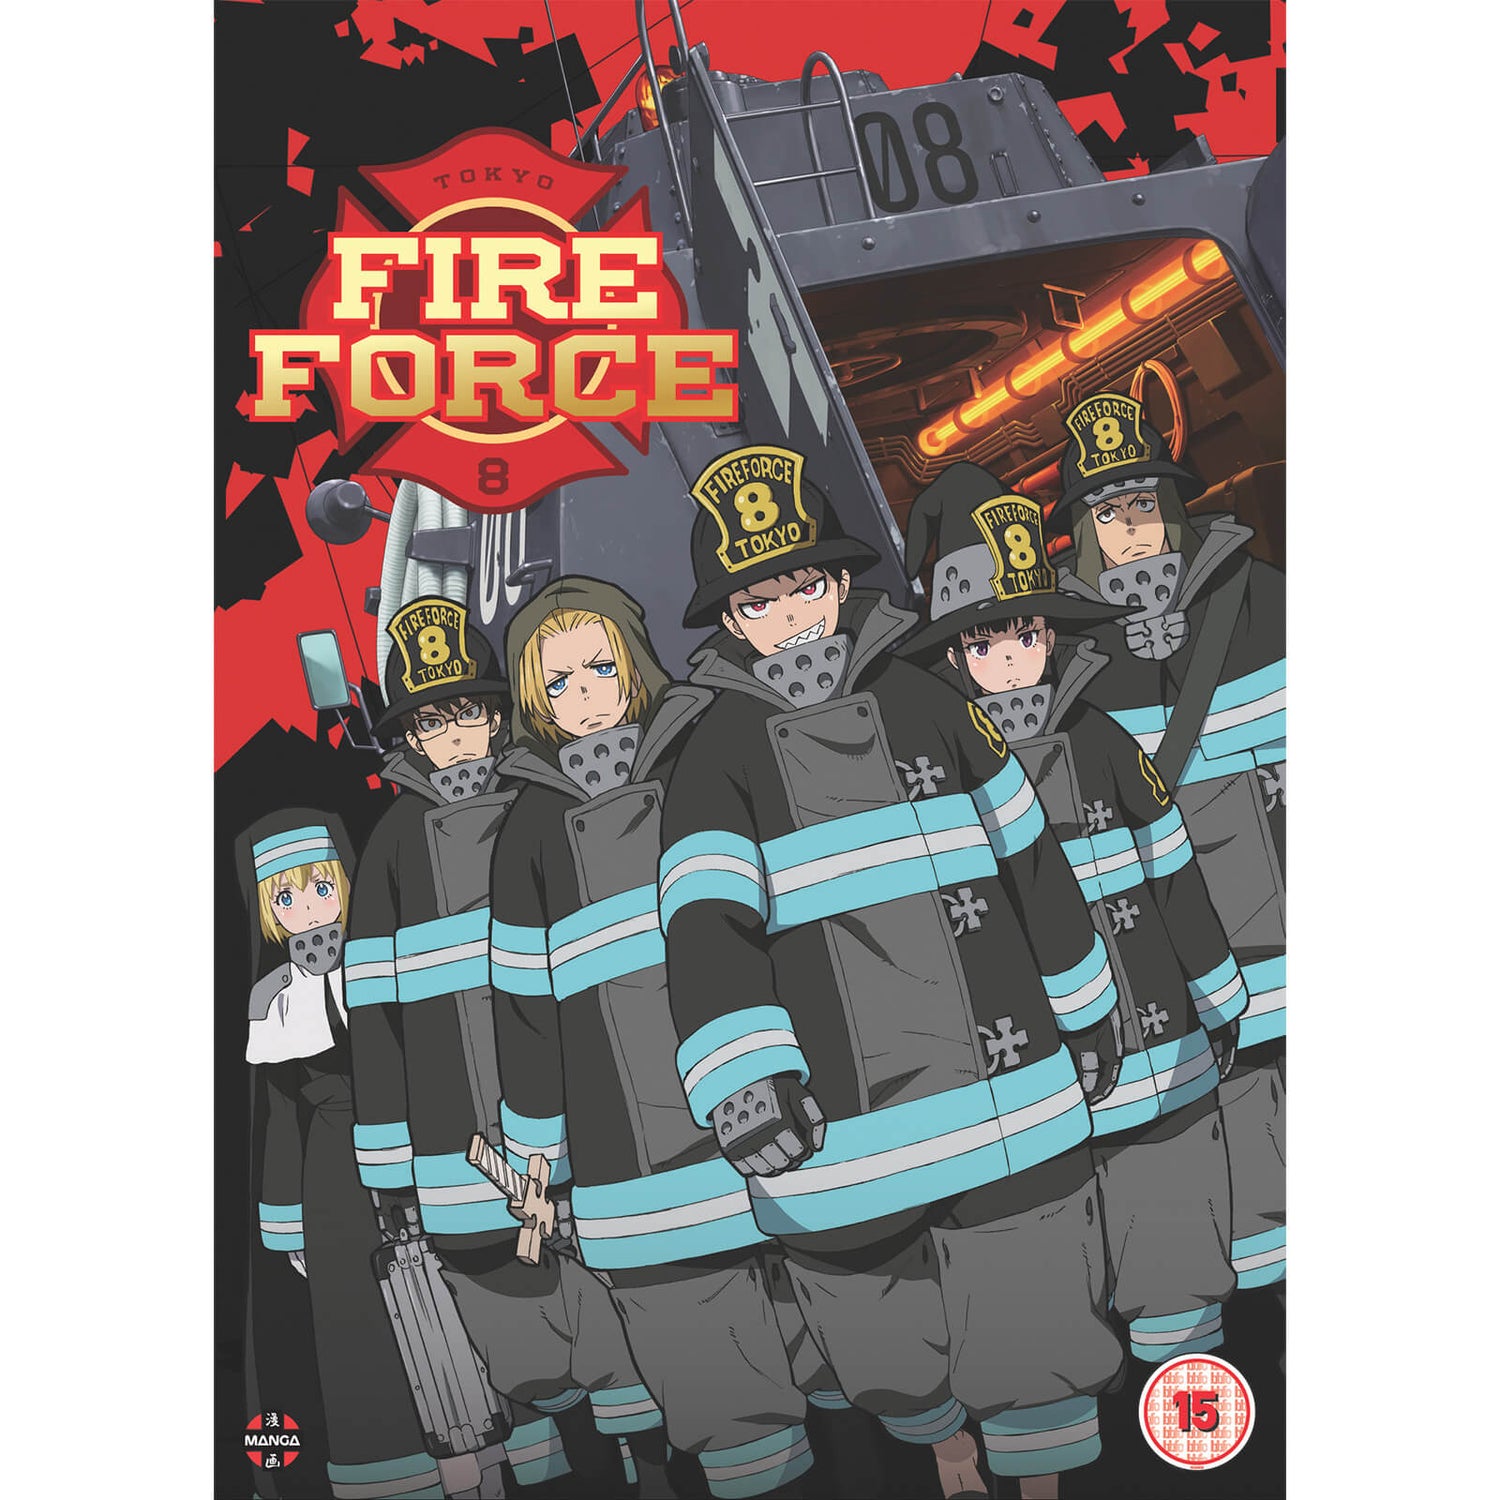 Fire Force: Staffel 1 Teil 1 (Episoden 1-12)